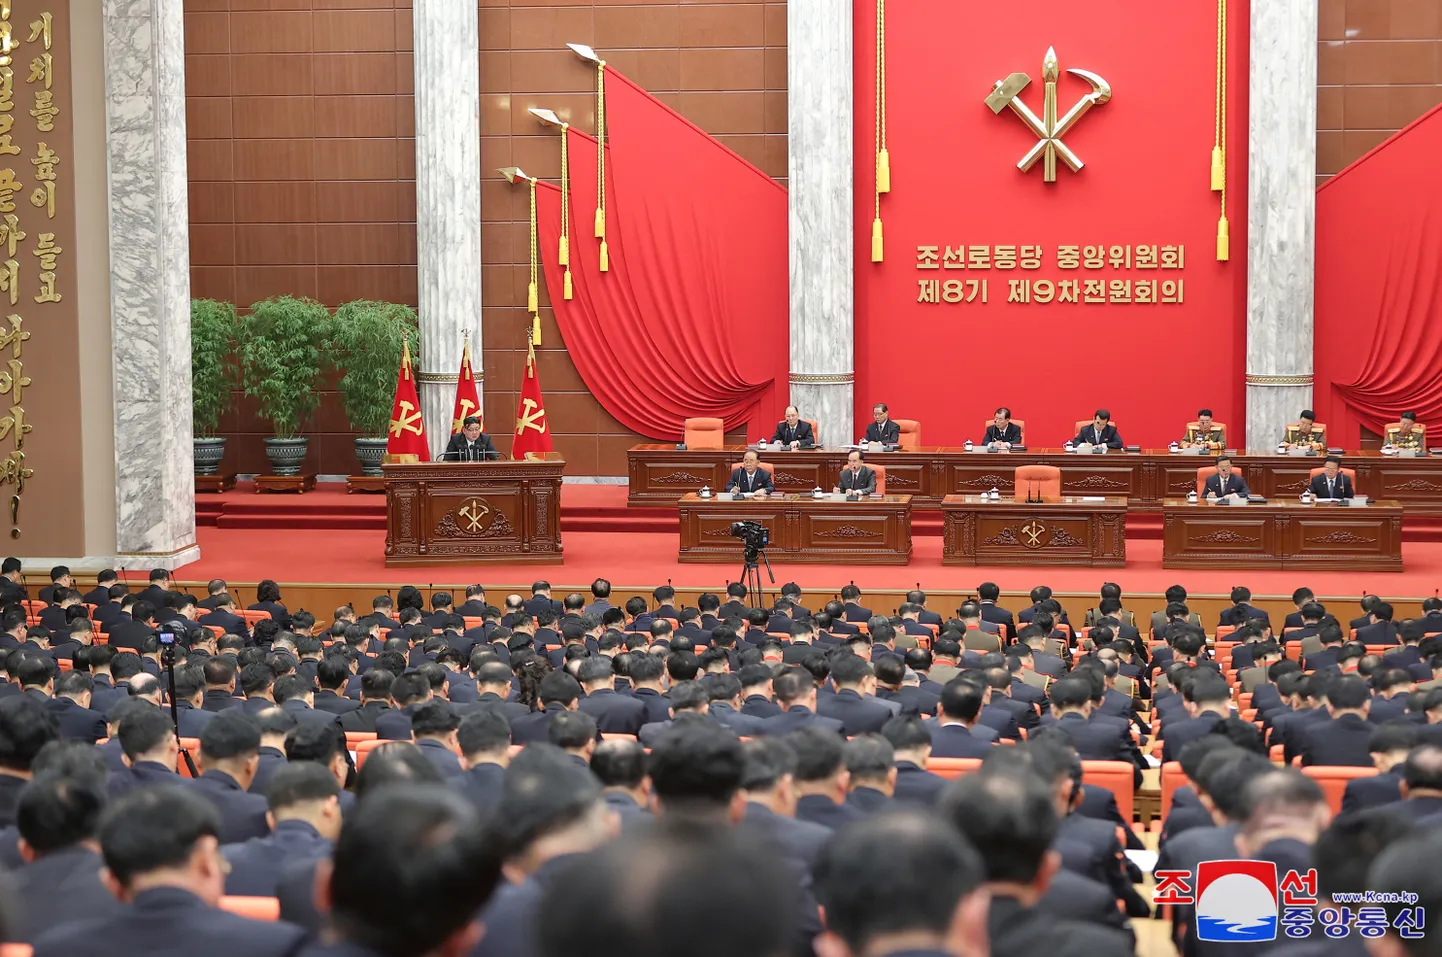 Põhja-Korea liider Kim Jong-un esinemas võimupartei plenaaristungil 26. detsembril.